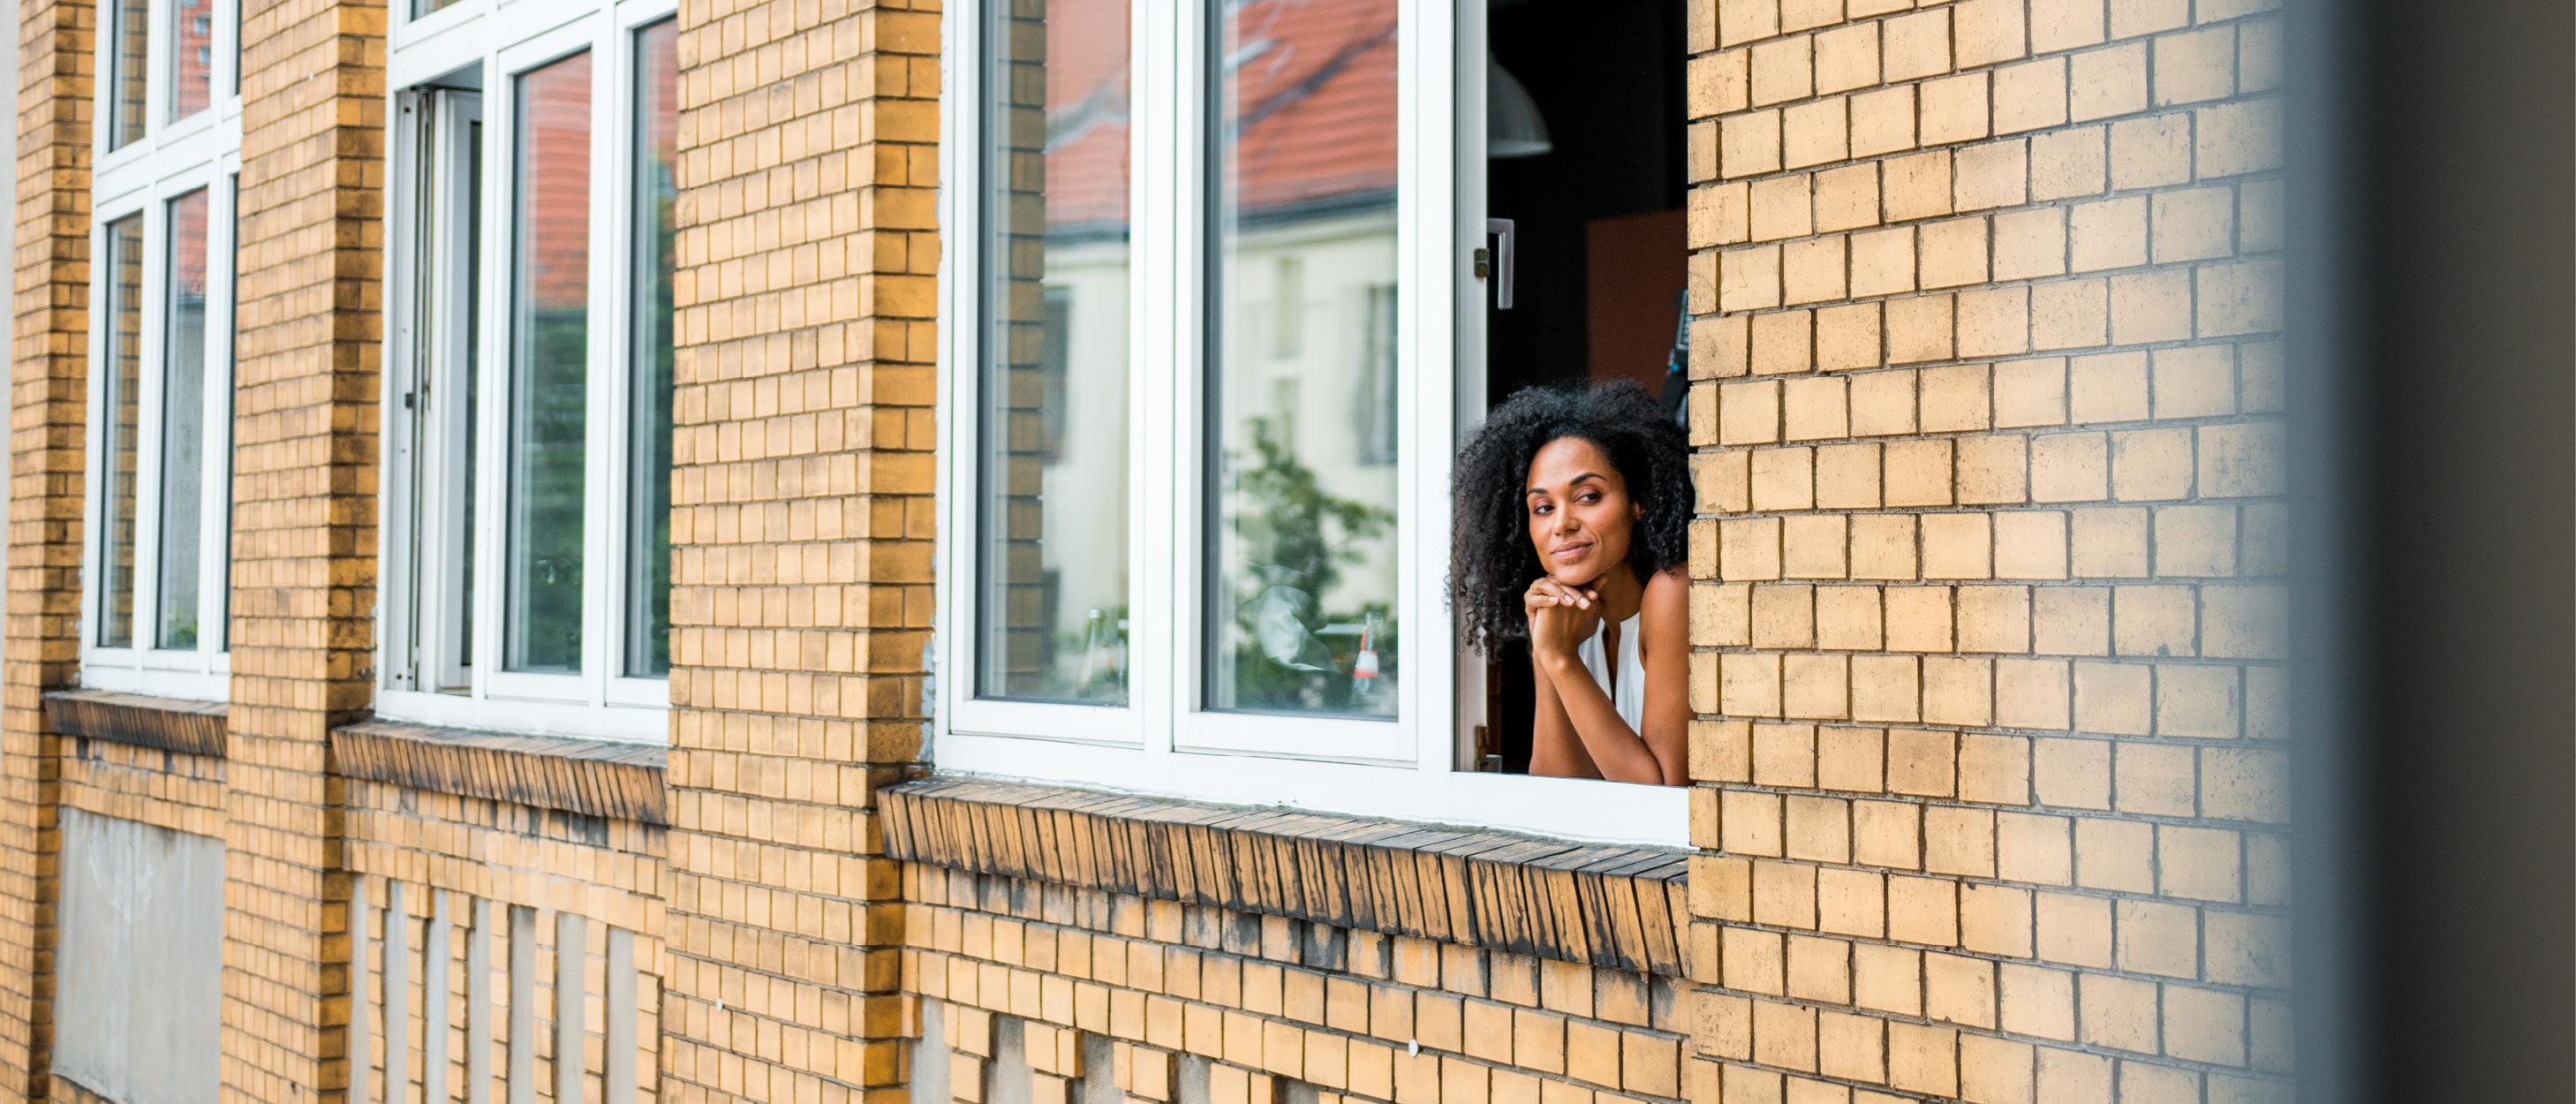 En kvinna står vid fönstret och tittar utåt